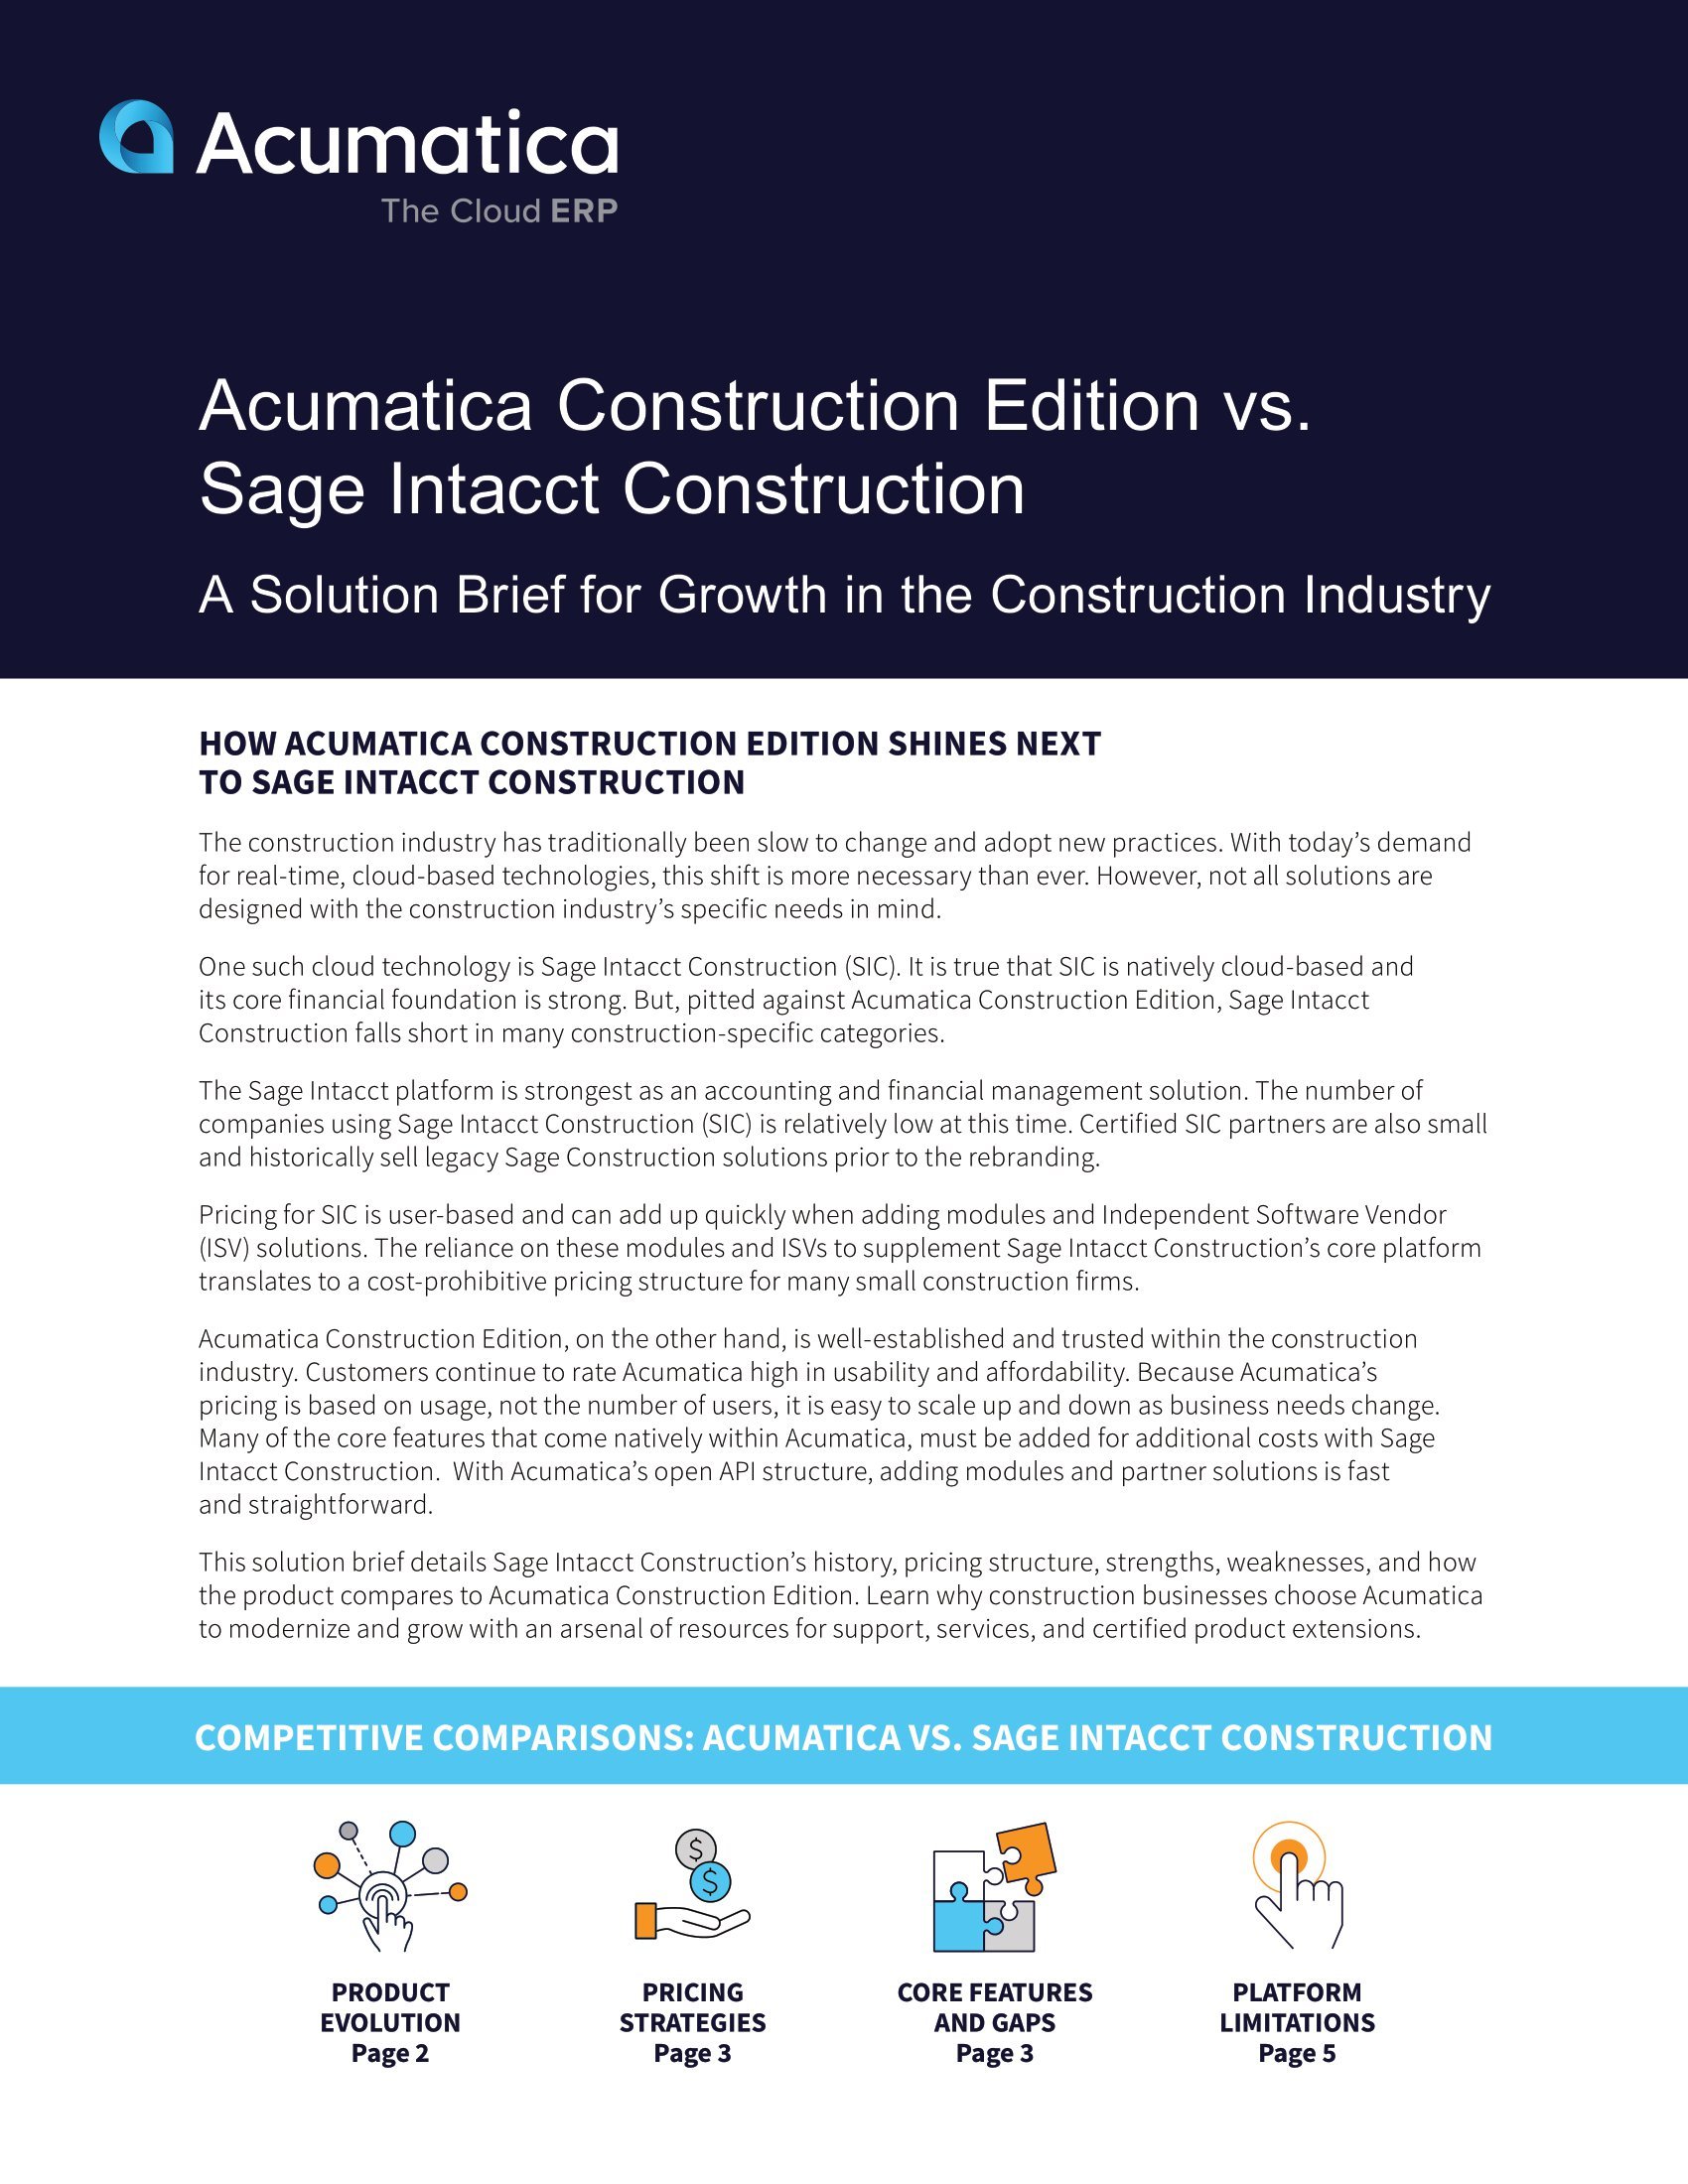 Comparaison entre Acumatica Construction Edition et Sage Intacct Construction